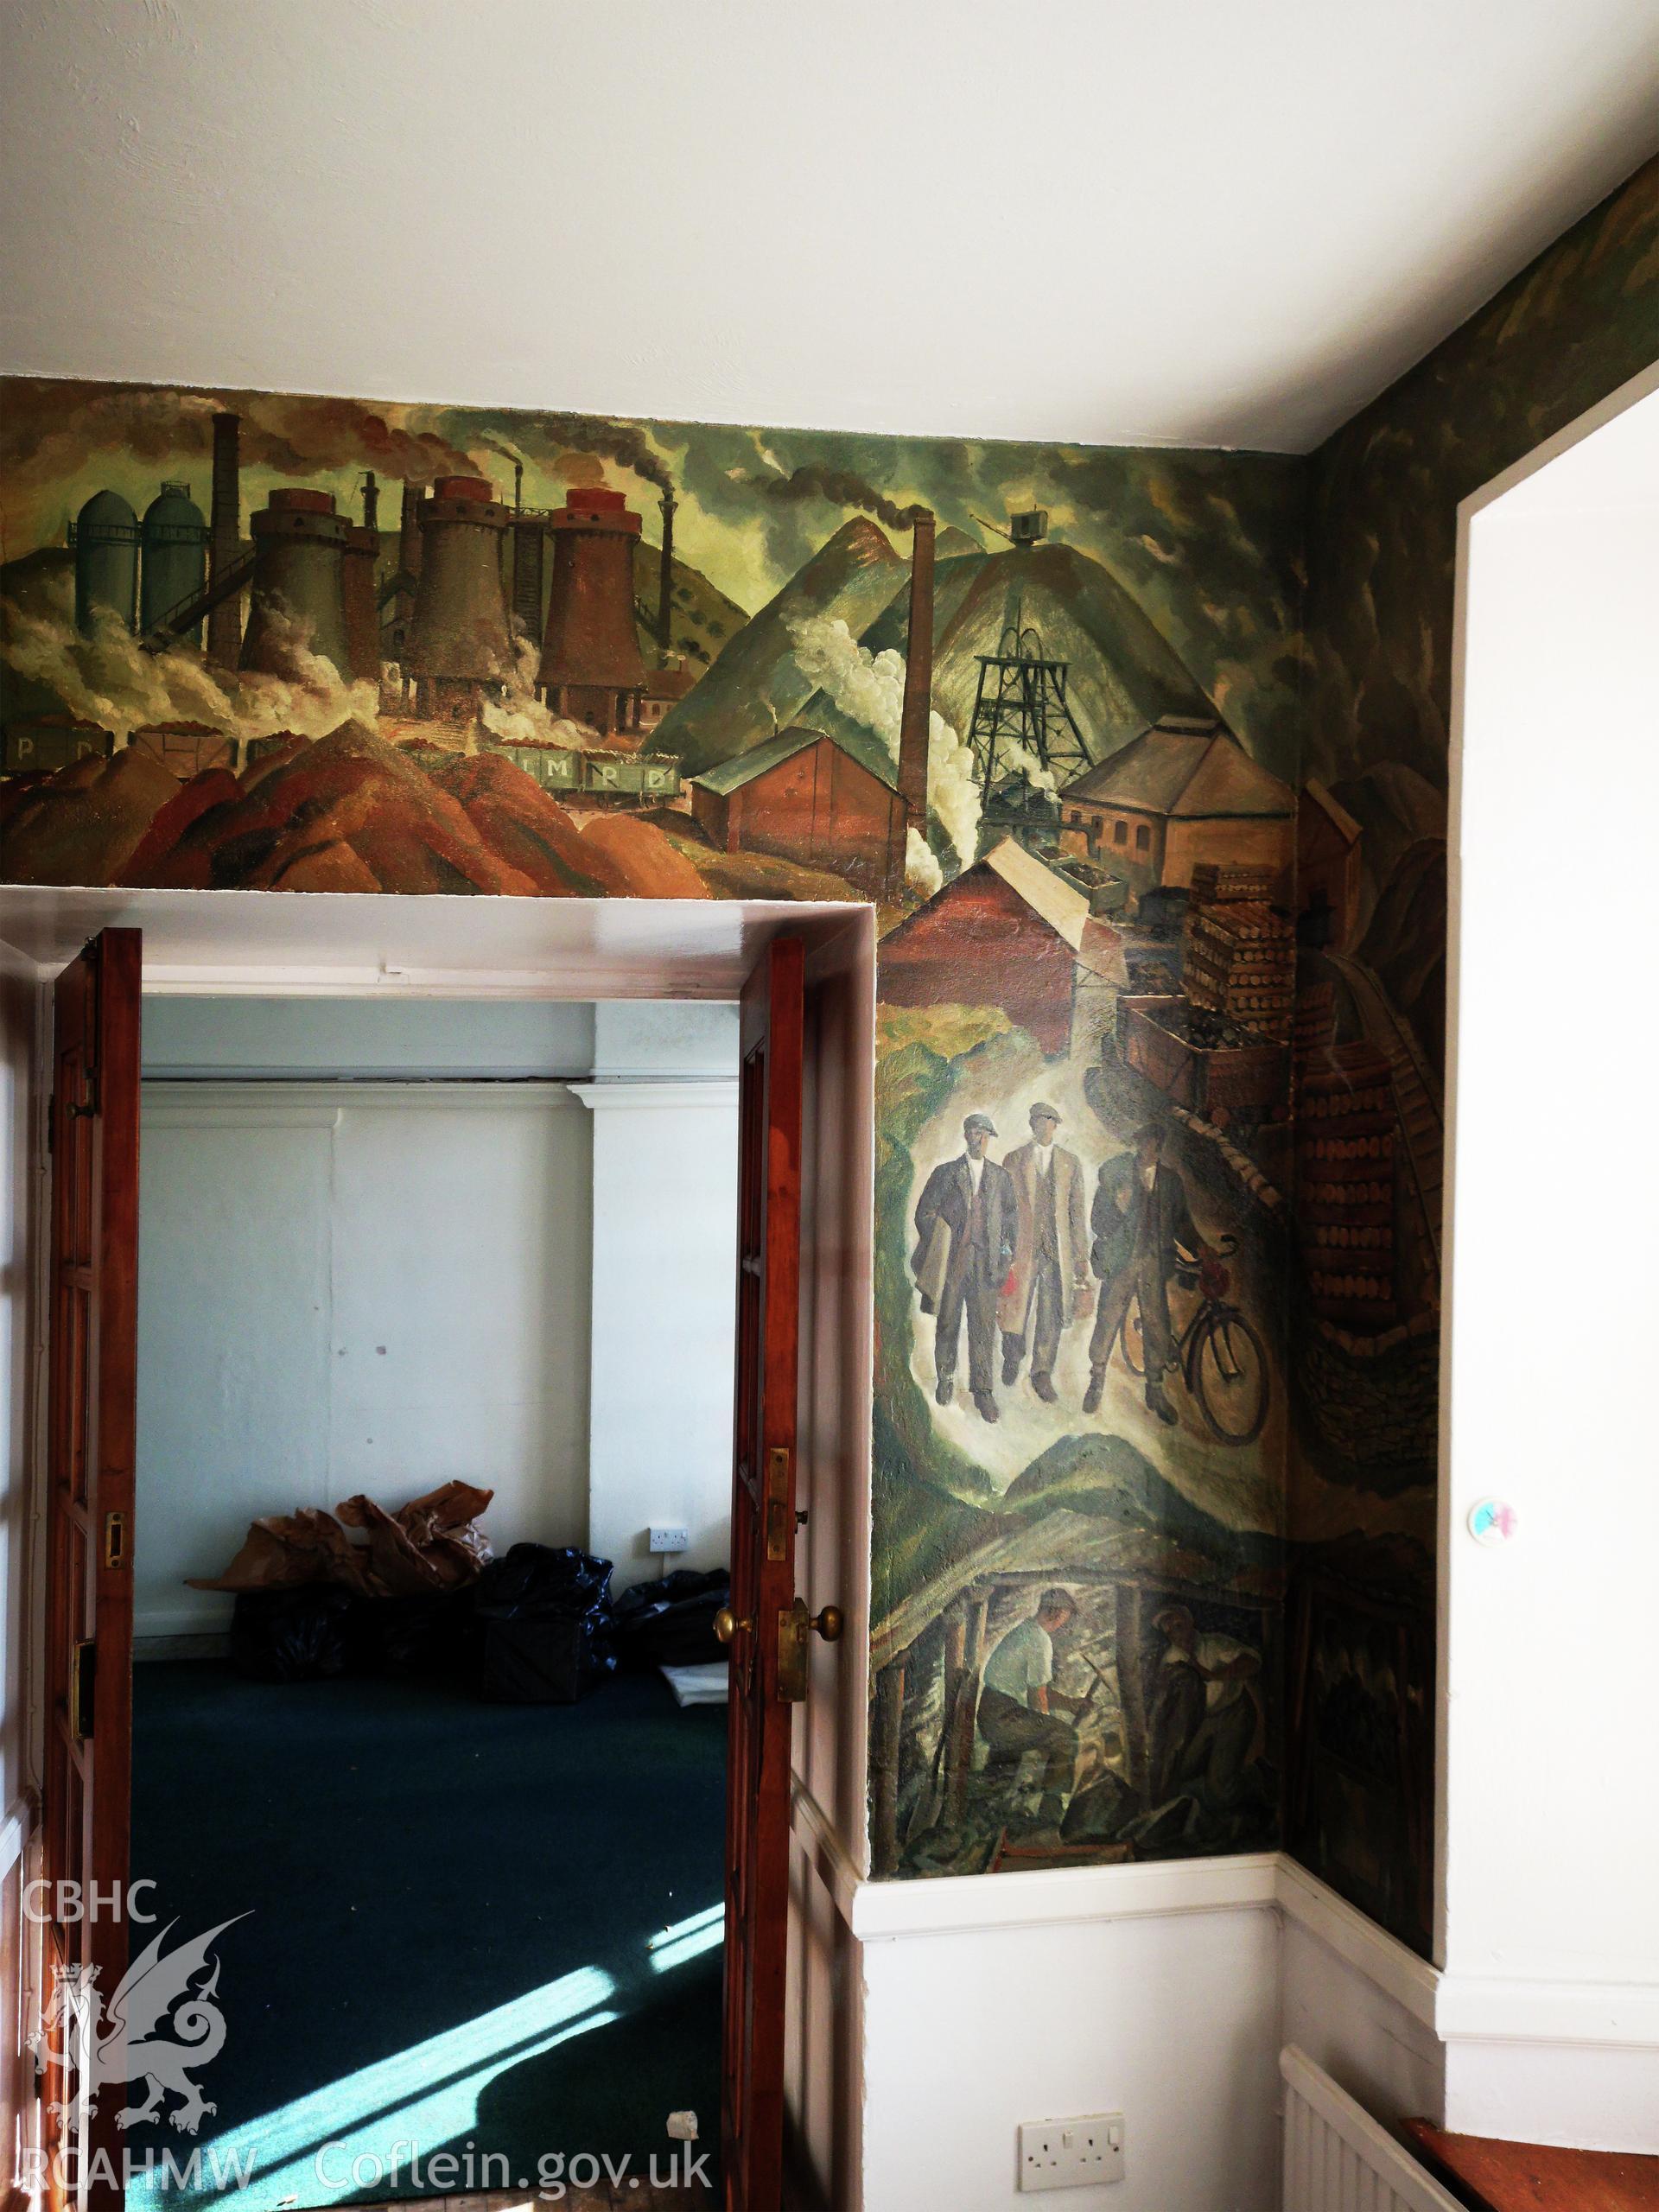 Plas Wernfawr, Harlech, staff room mural by Robert Baker